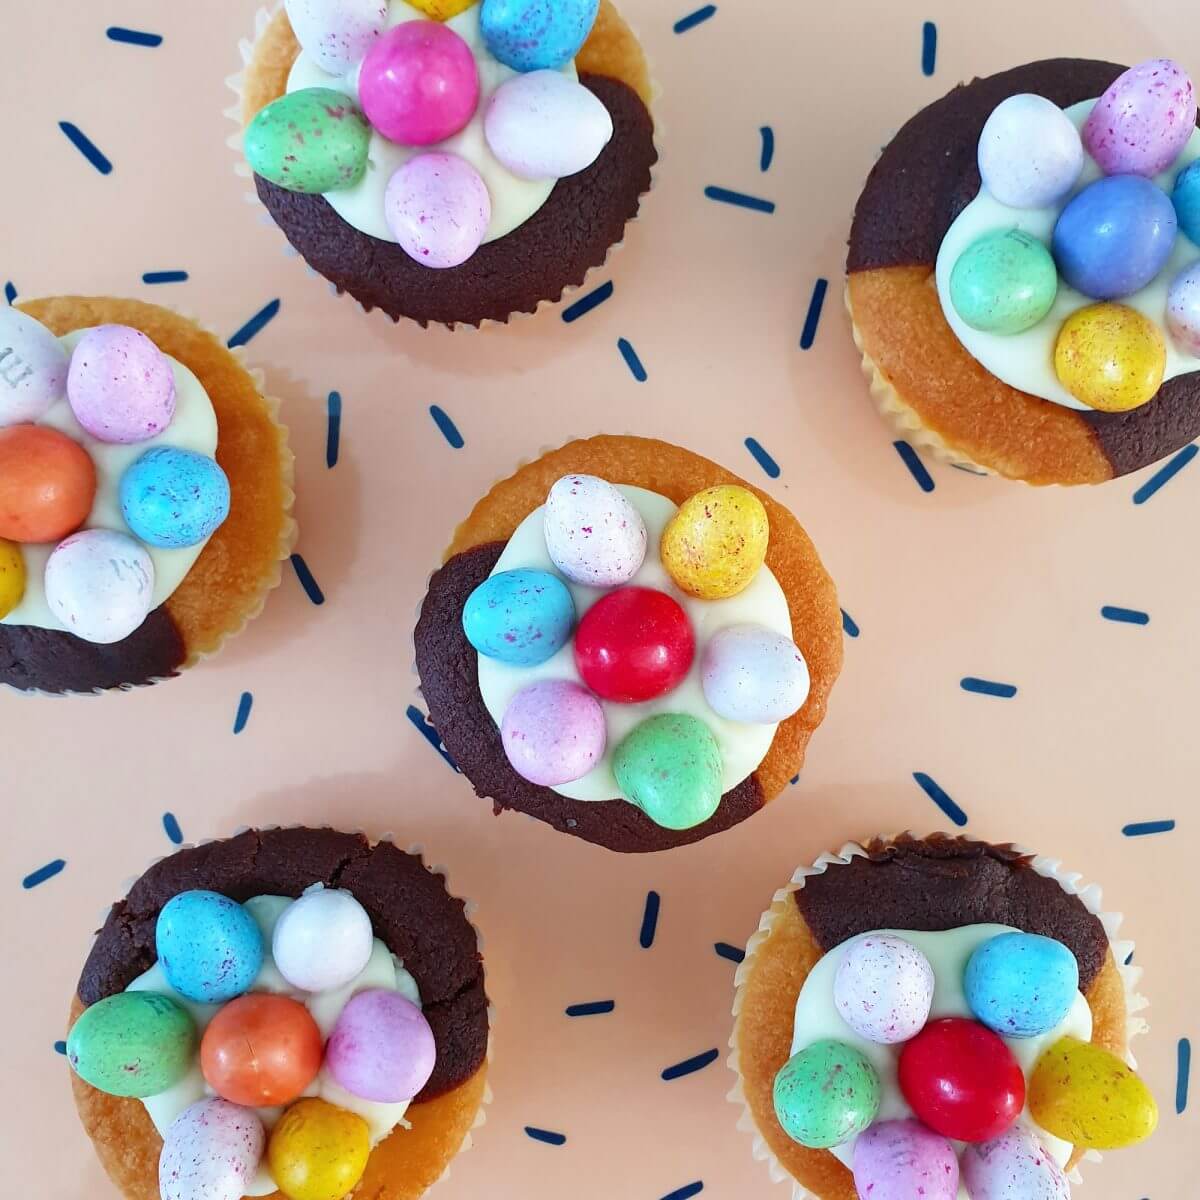 Traktatie ideeën voor kinderen: verjaardag vieren op crèche of school. Zoals versierde cupcakes trakteren met Pasen.